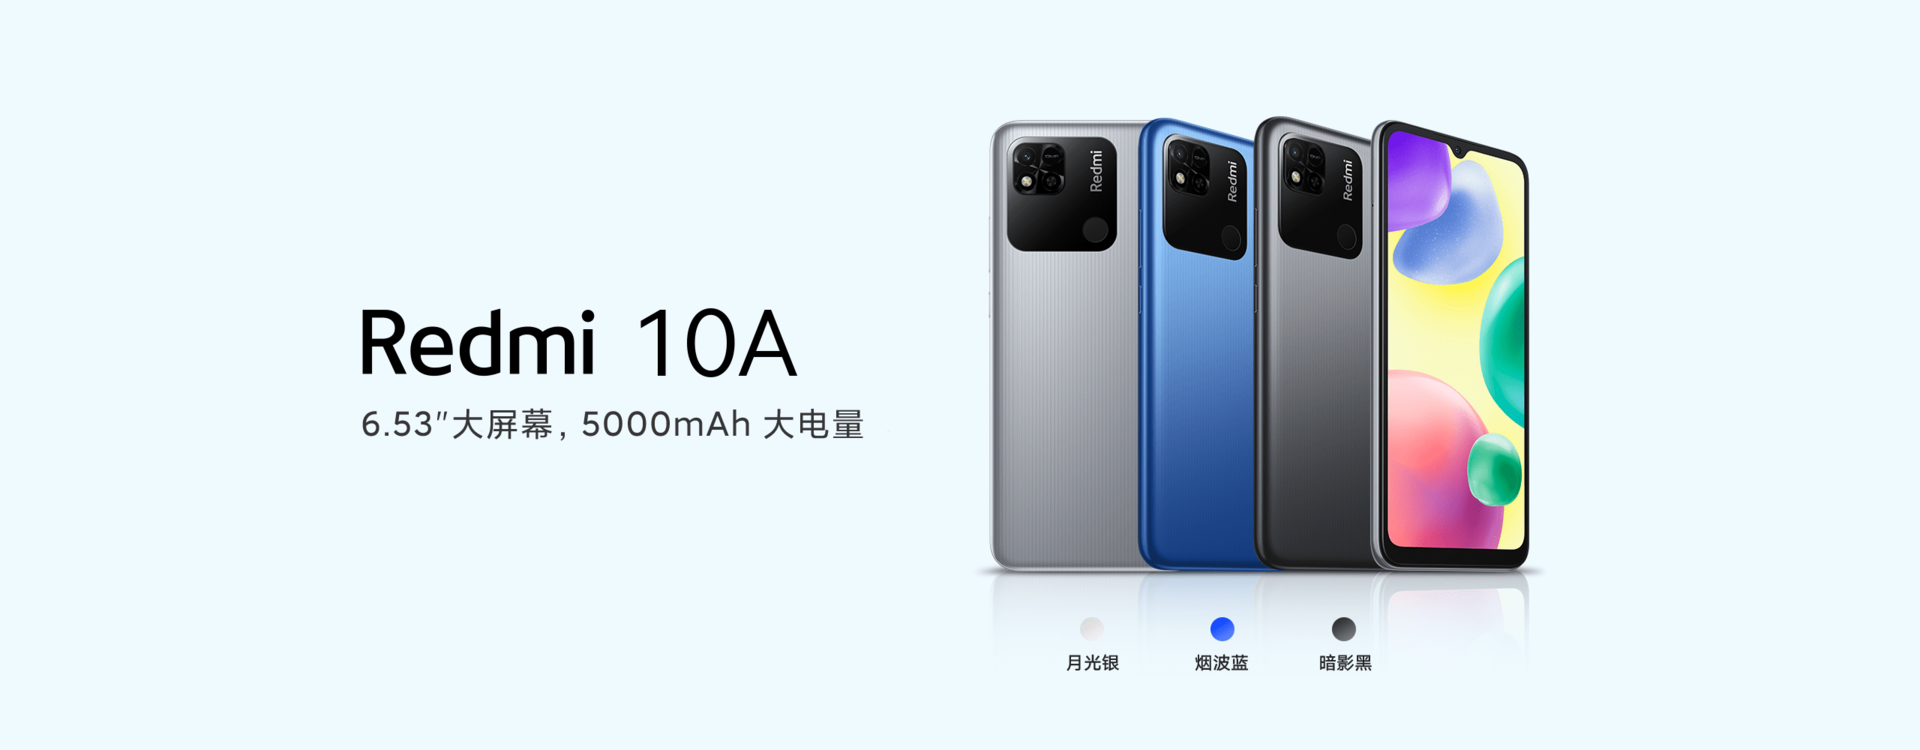 El Xiaomi Redmi 10A se lanza con una pizca del Redmi 9A por 649 CNY (~102  dólares) - Notebookcheck.org